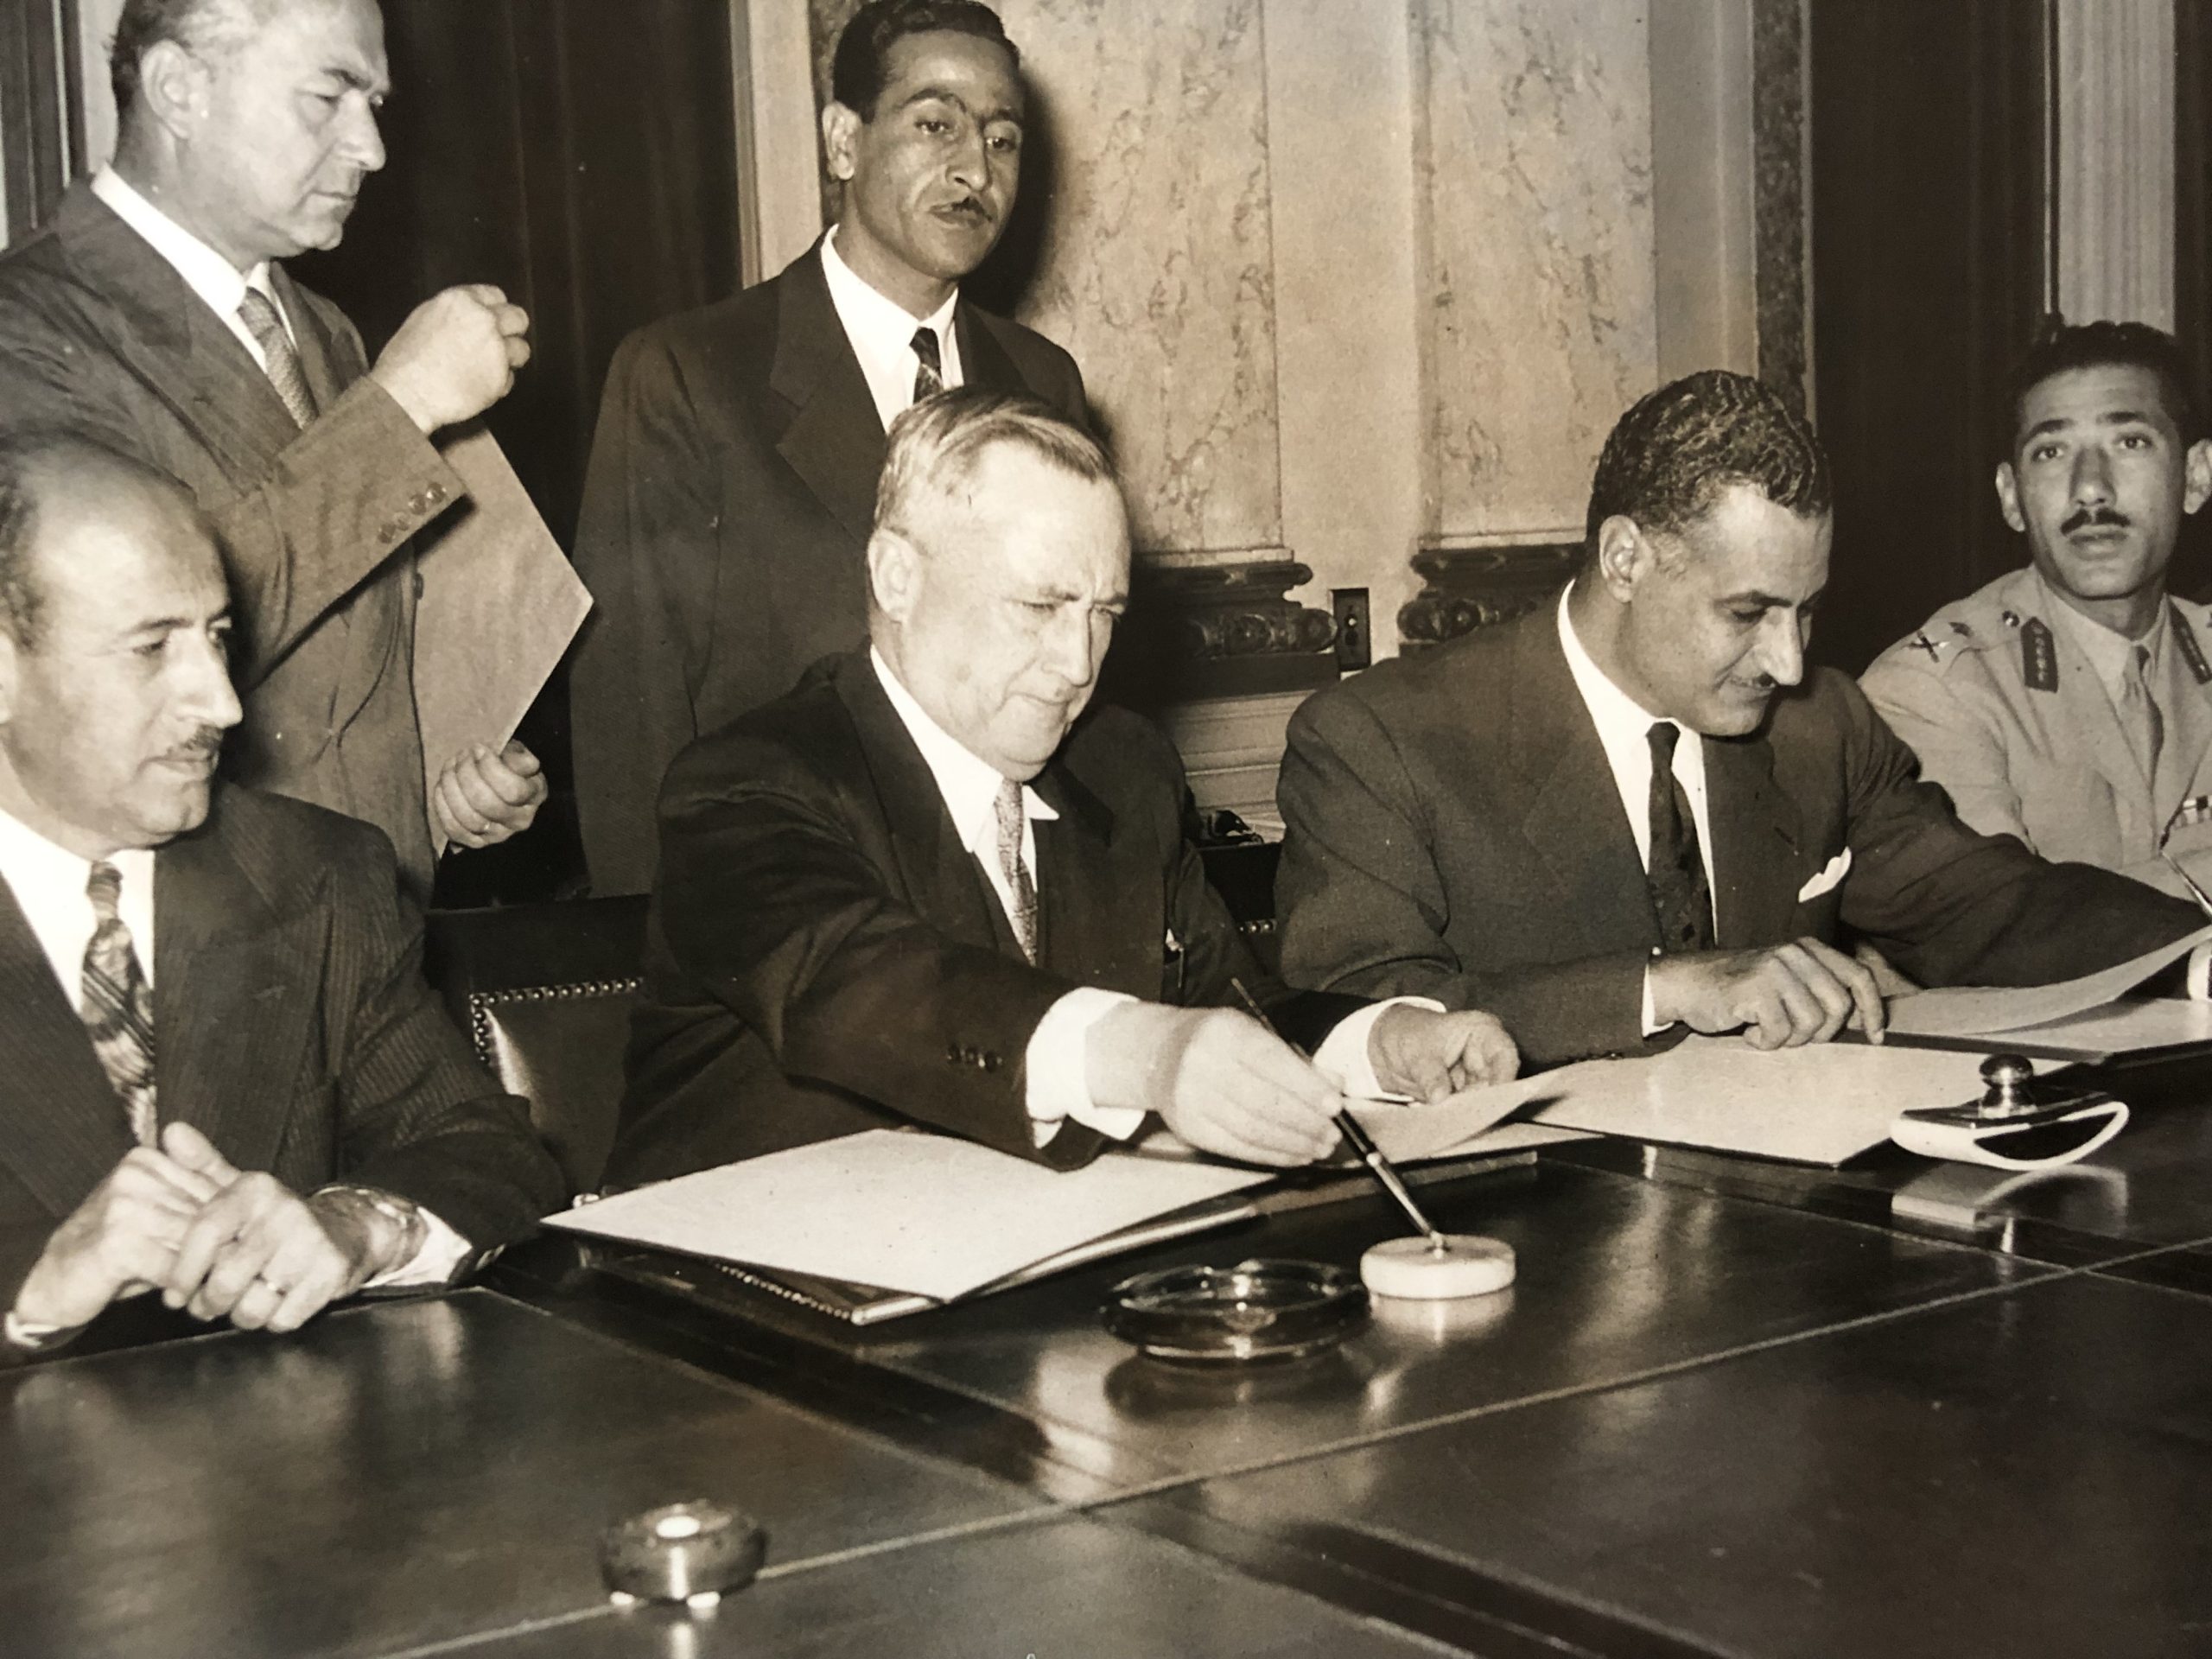 التاريخ السوري المعاصر - جمال عبد الناصر و سعيد الغزي يوقعان اتفاق القيادة المشتركة عام 1955 (1)